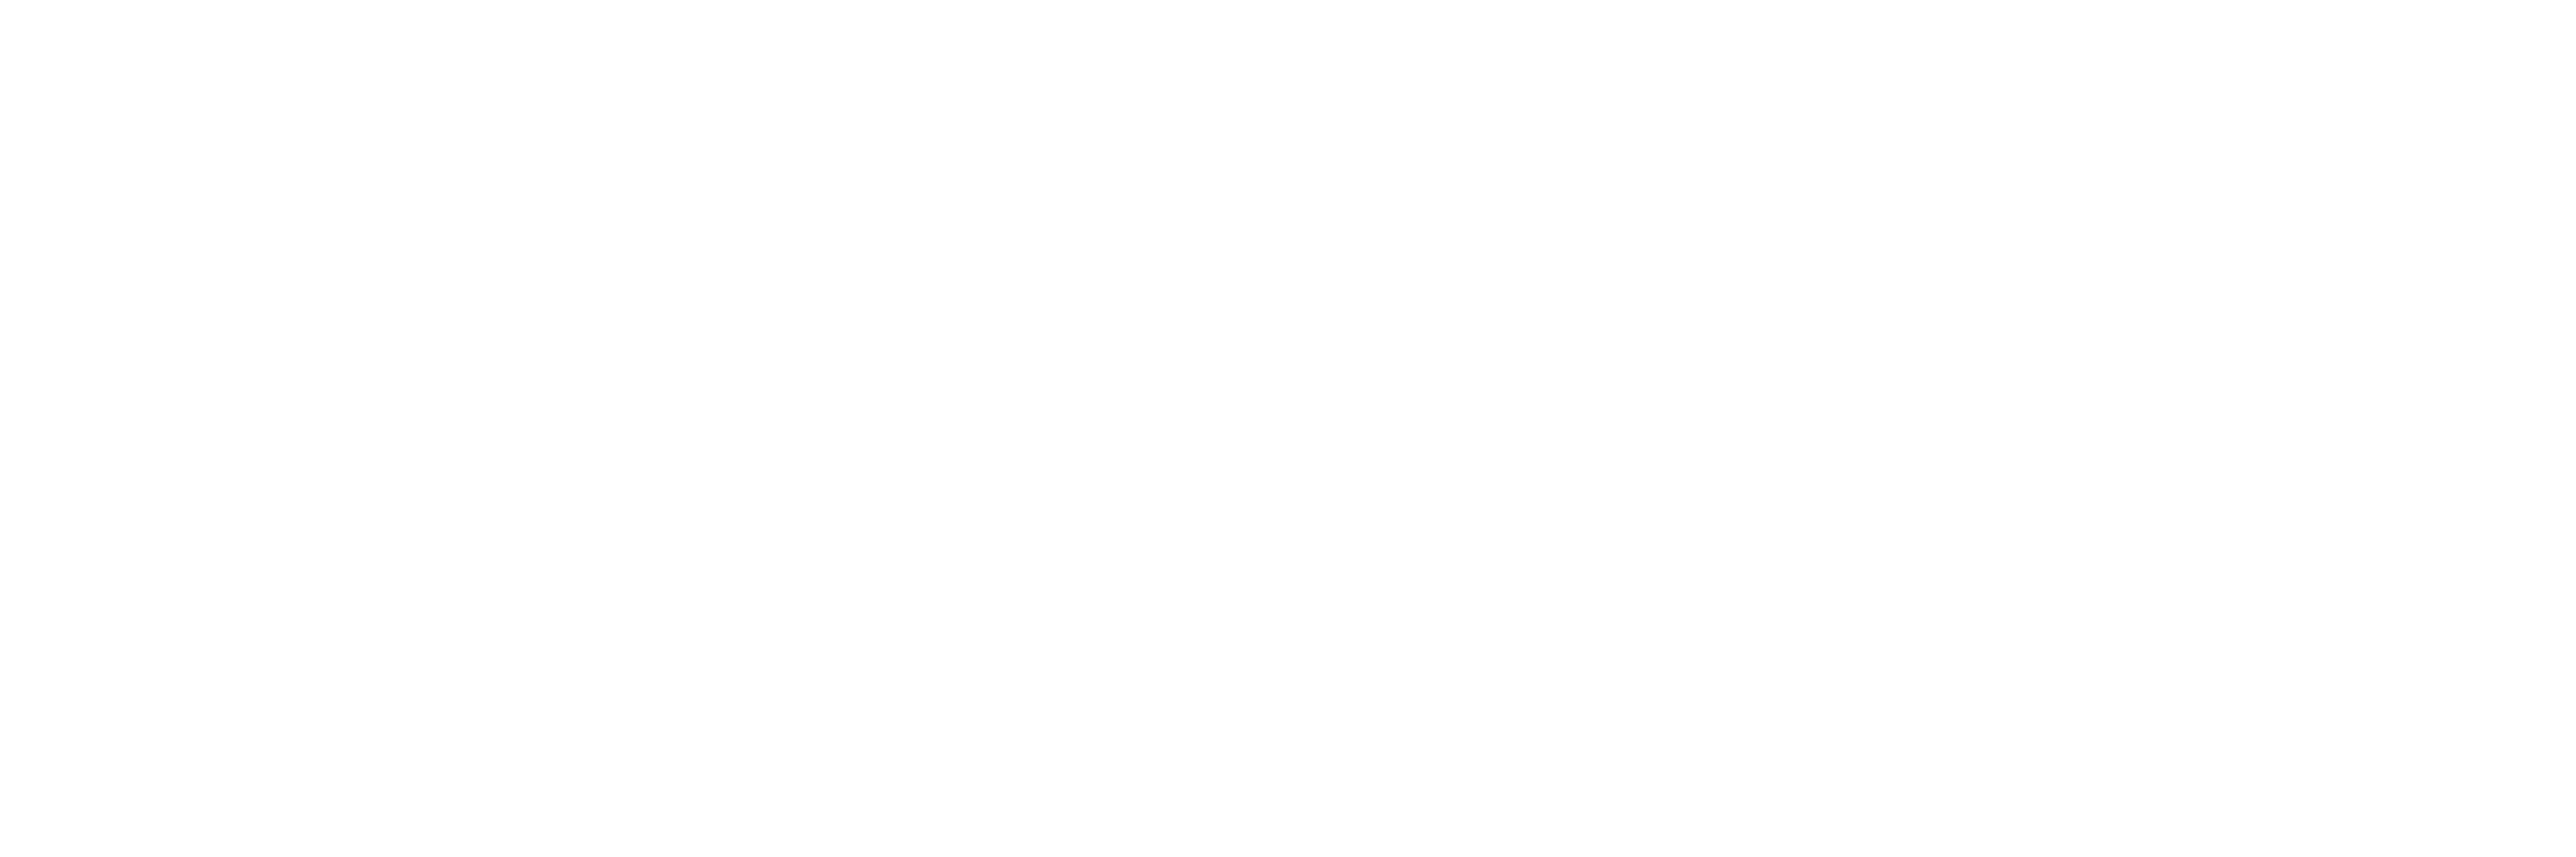 schobel digital: Digitale Lösungen für ambitionierte Unternehmen